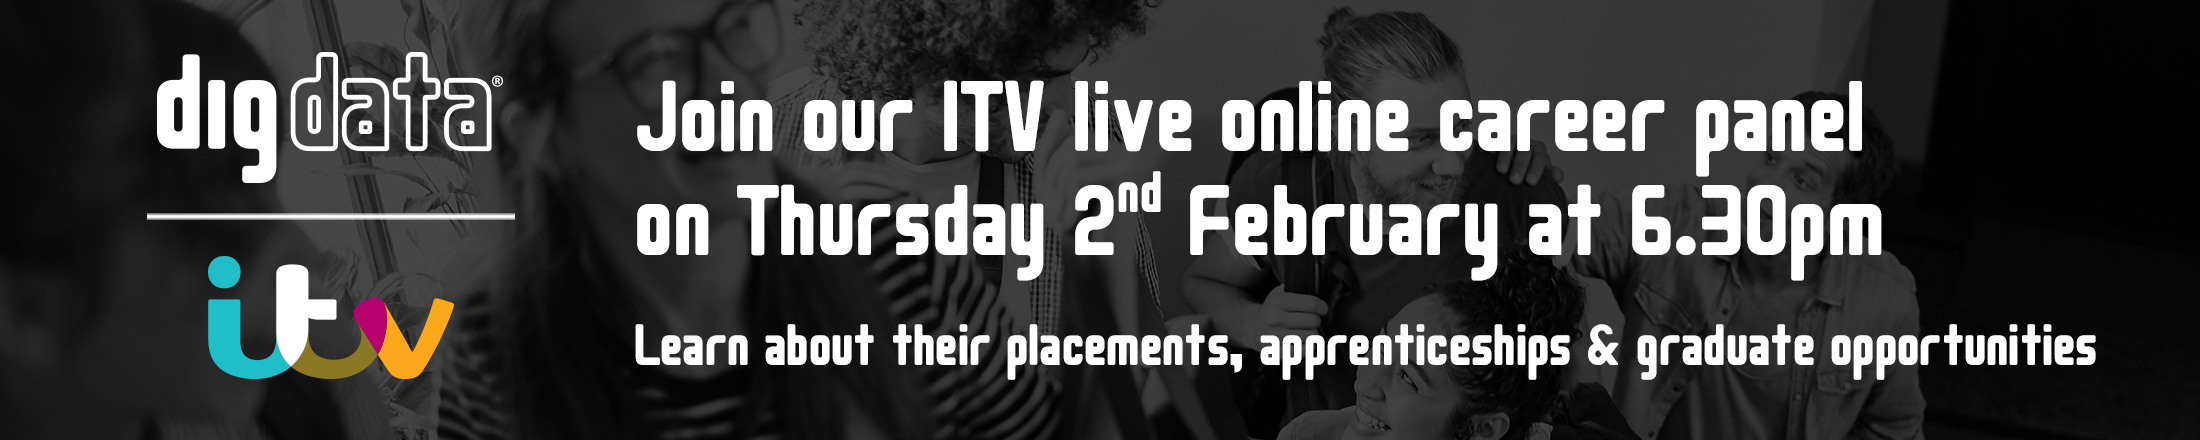 ITV Career Panel Marketing Pack Banner